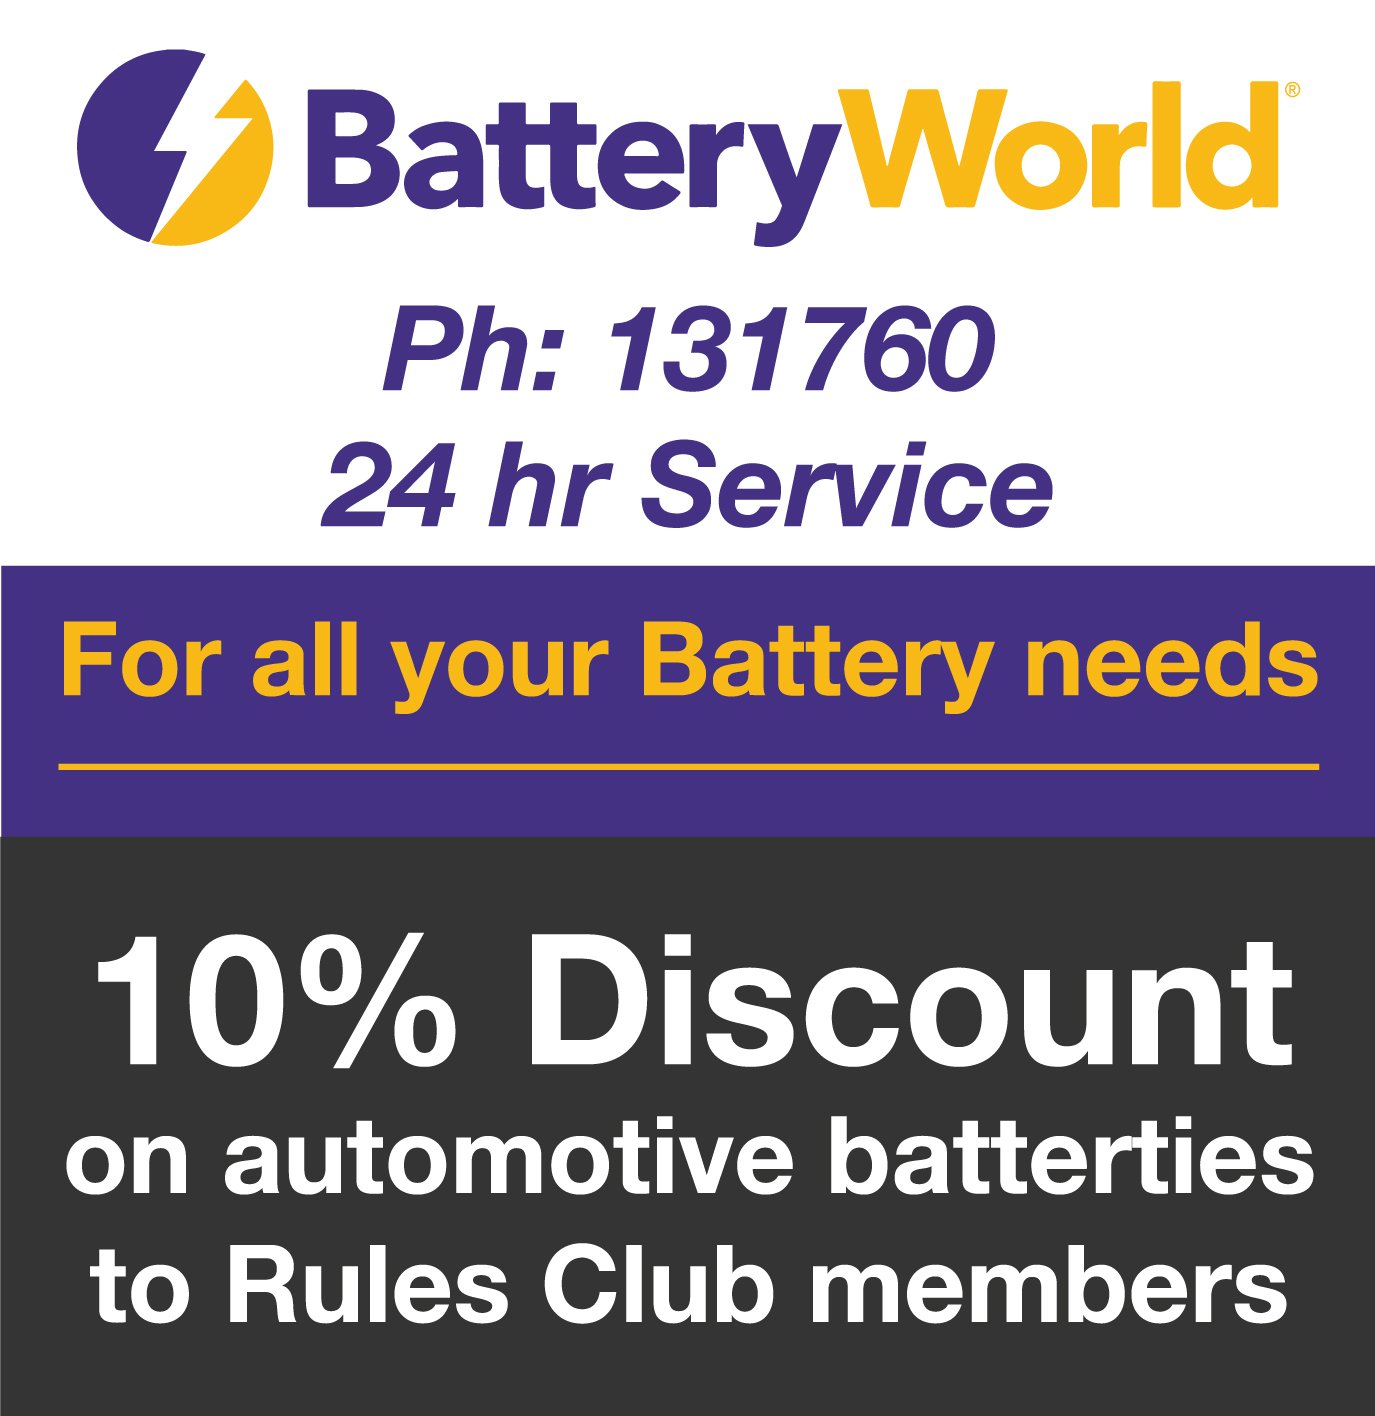 8-Battery World-discount.jpg